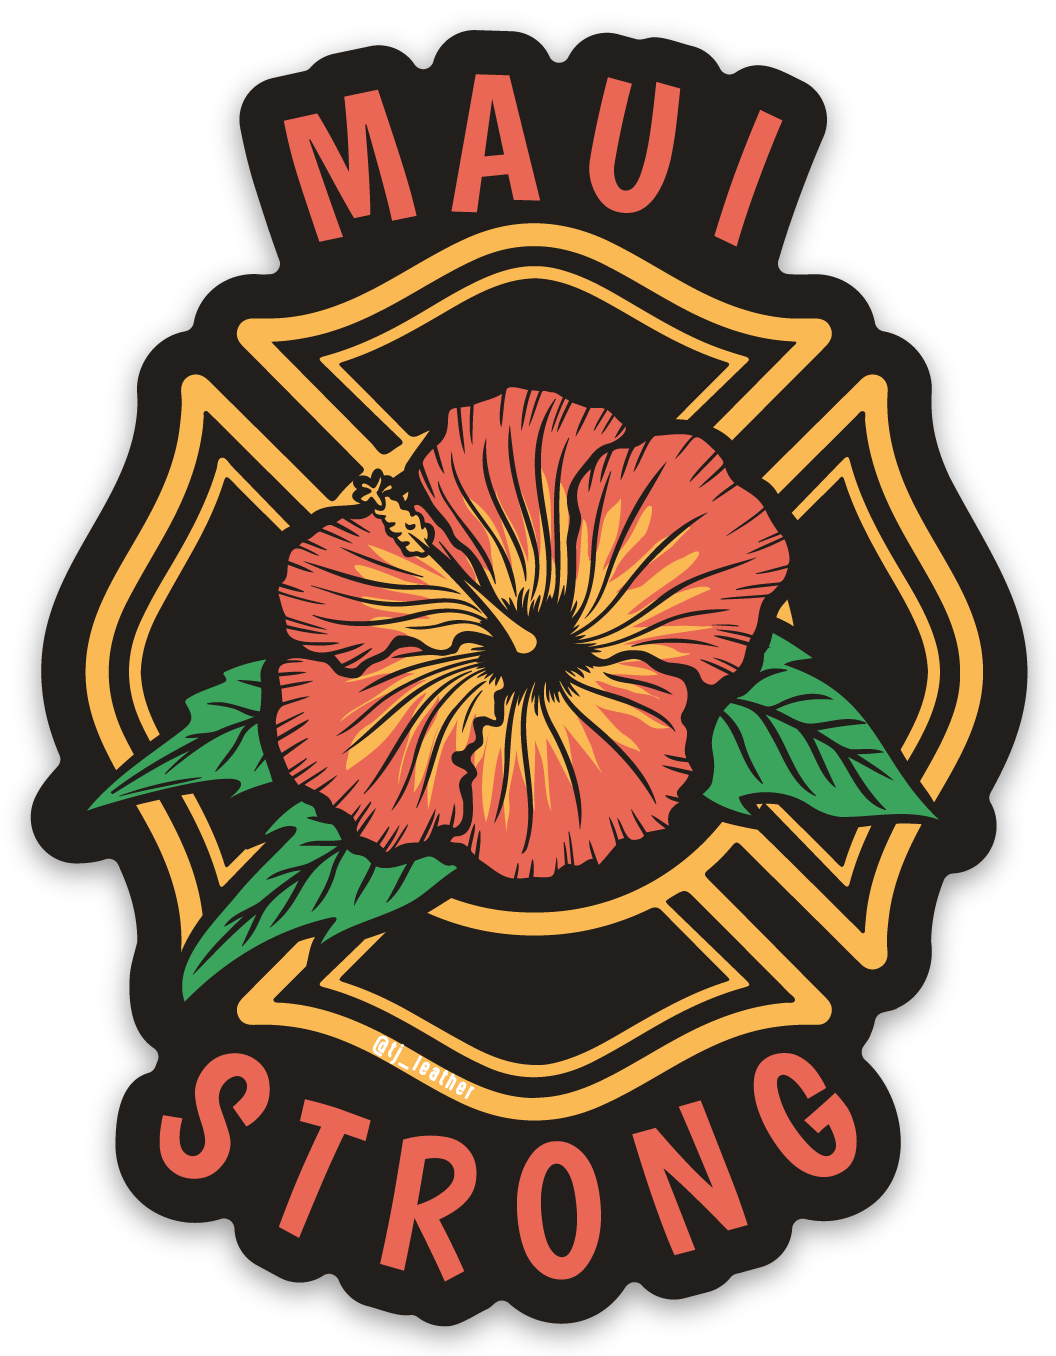 Maui Strong Firefighter Sticker